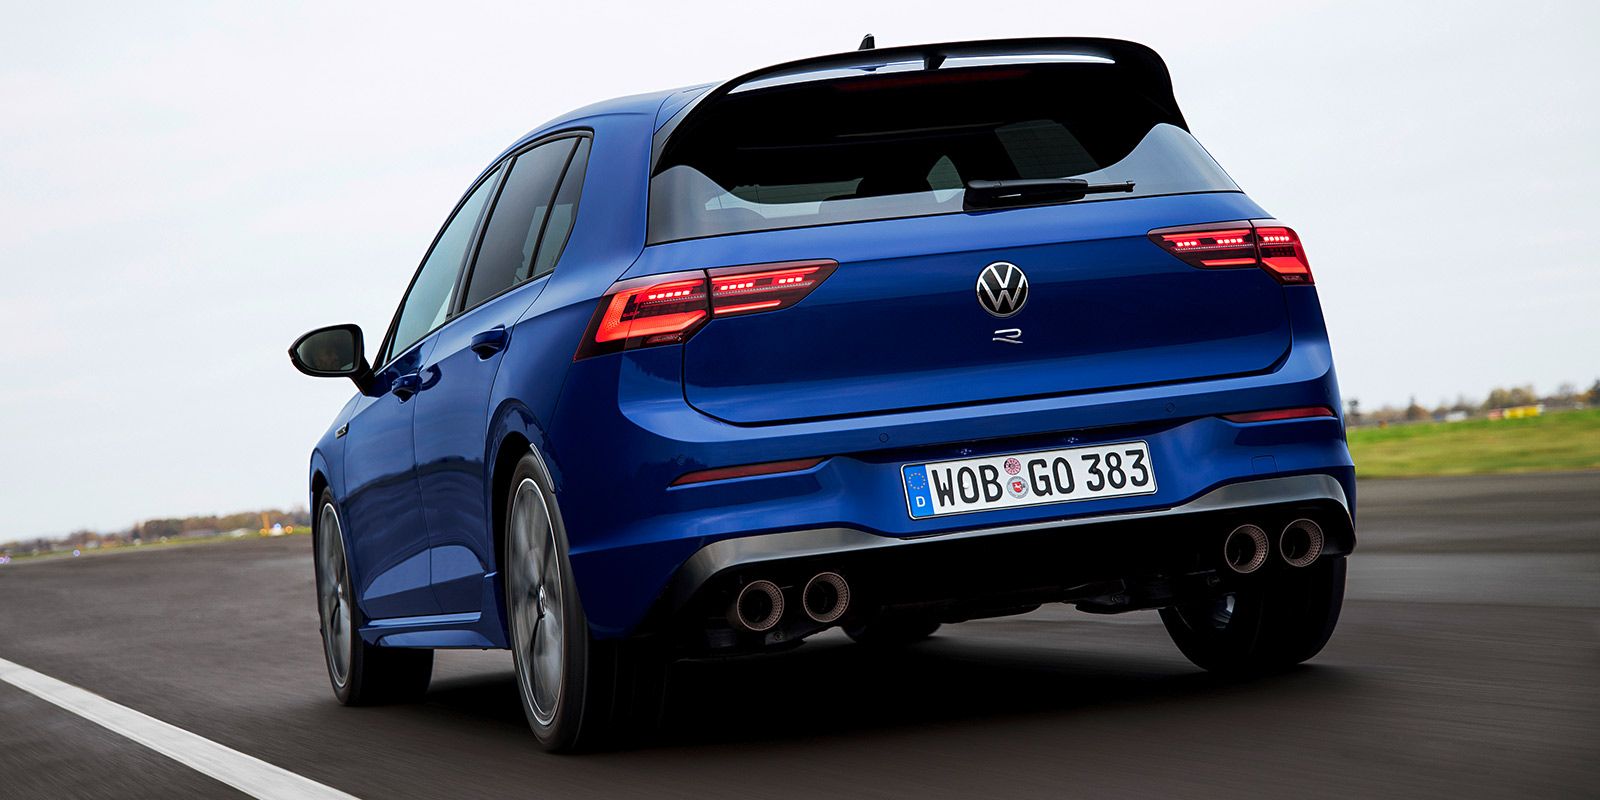 Presentación oficial: Todas las novedades sobre el nuevo Volkswagen Golf